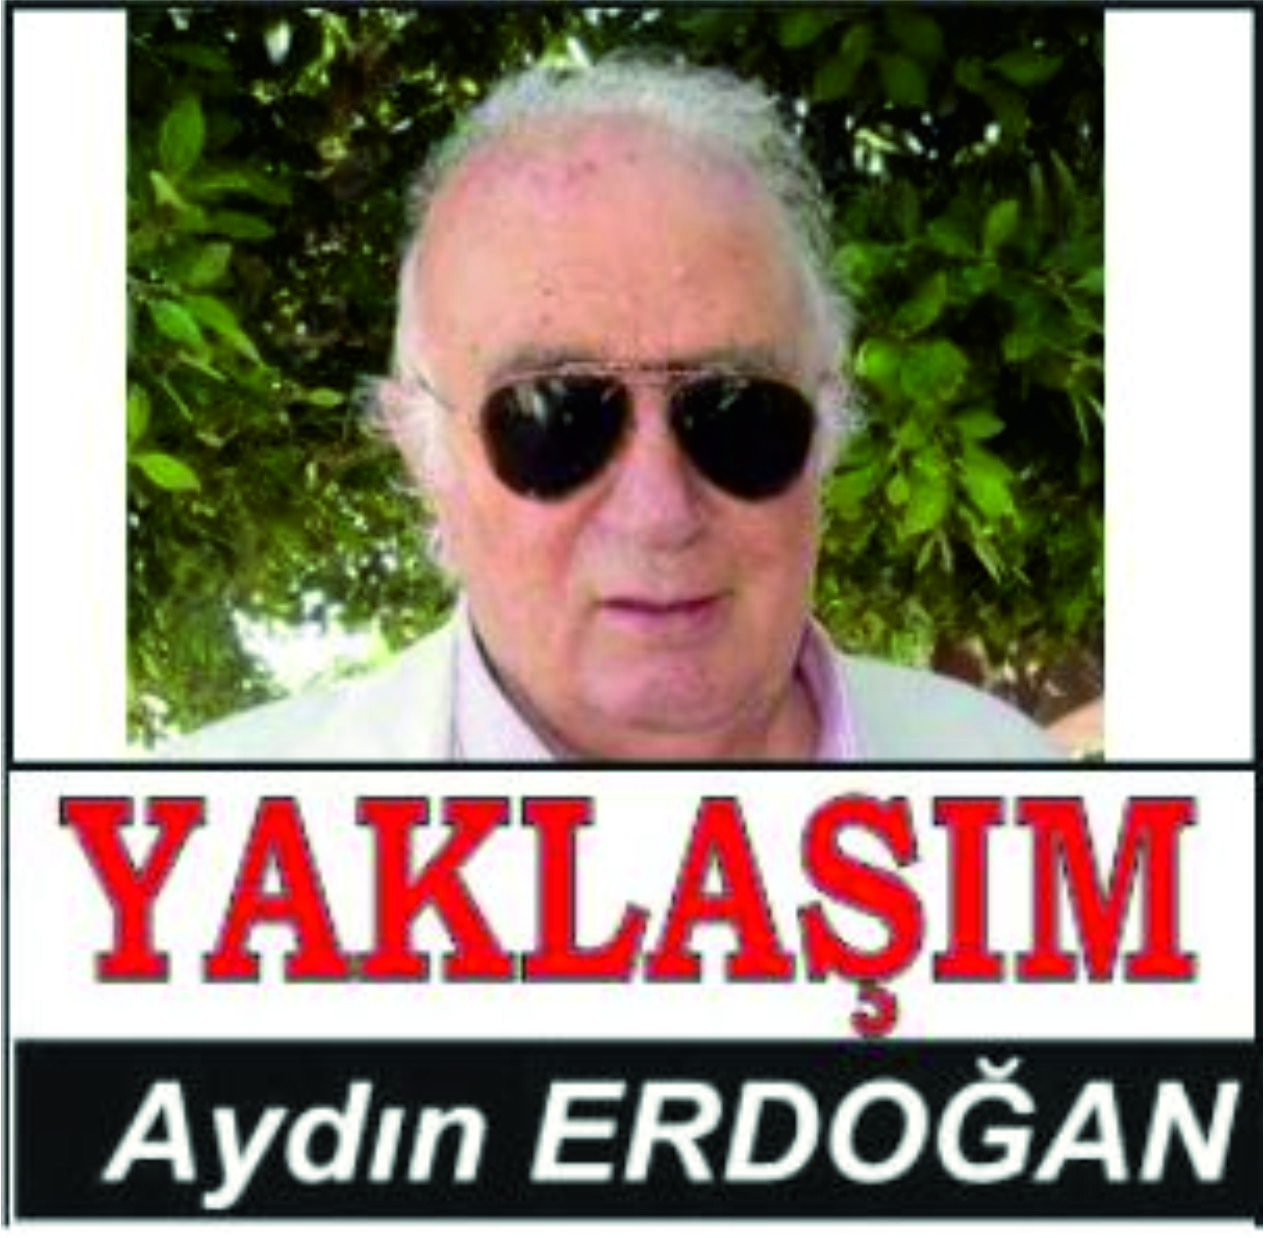 Aydın Erdoğan